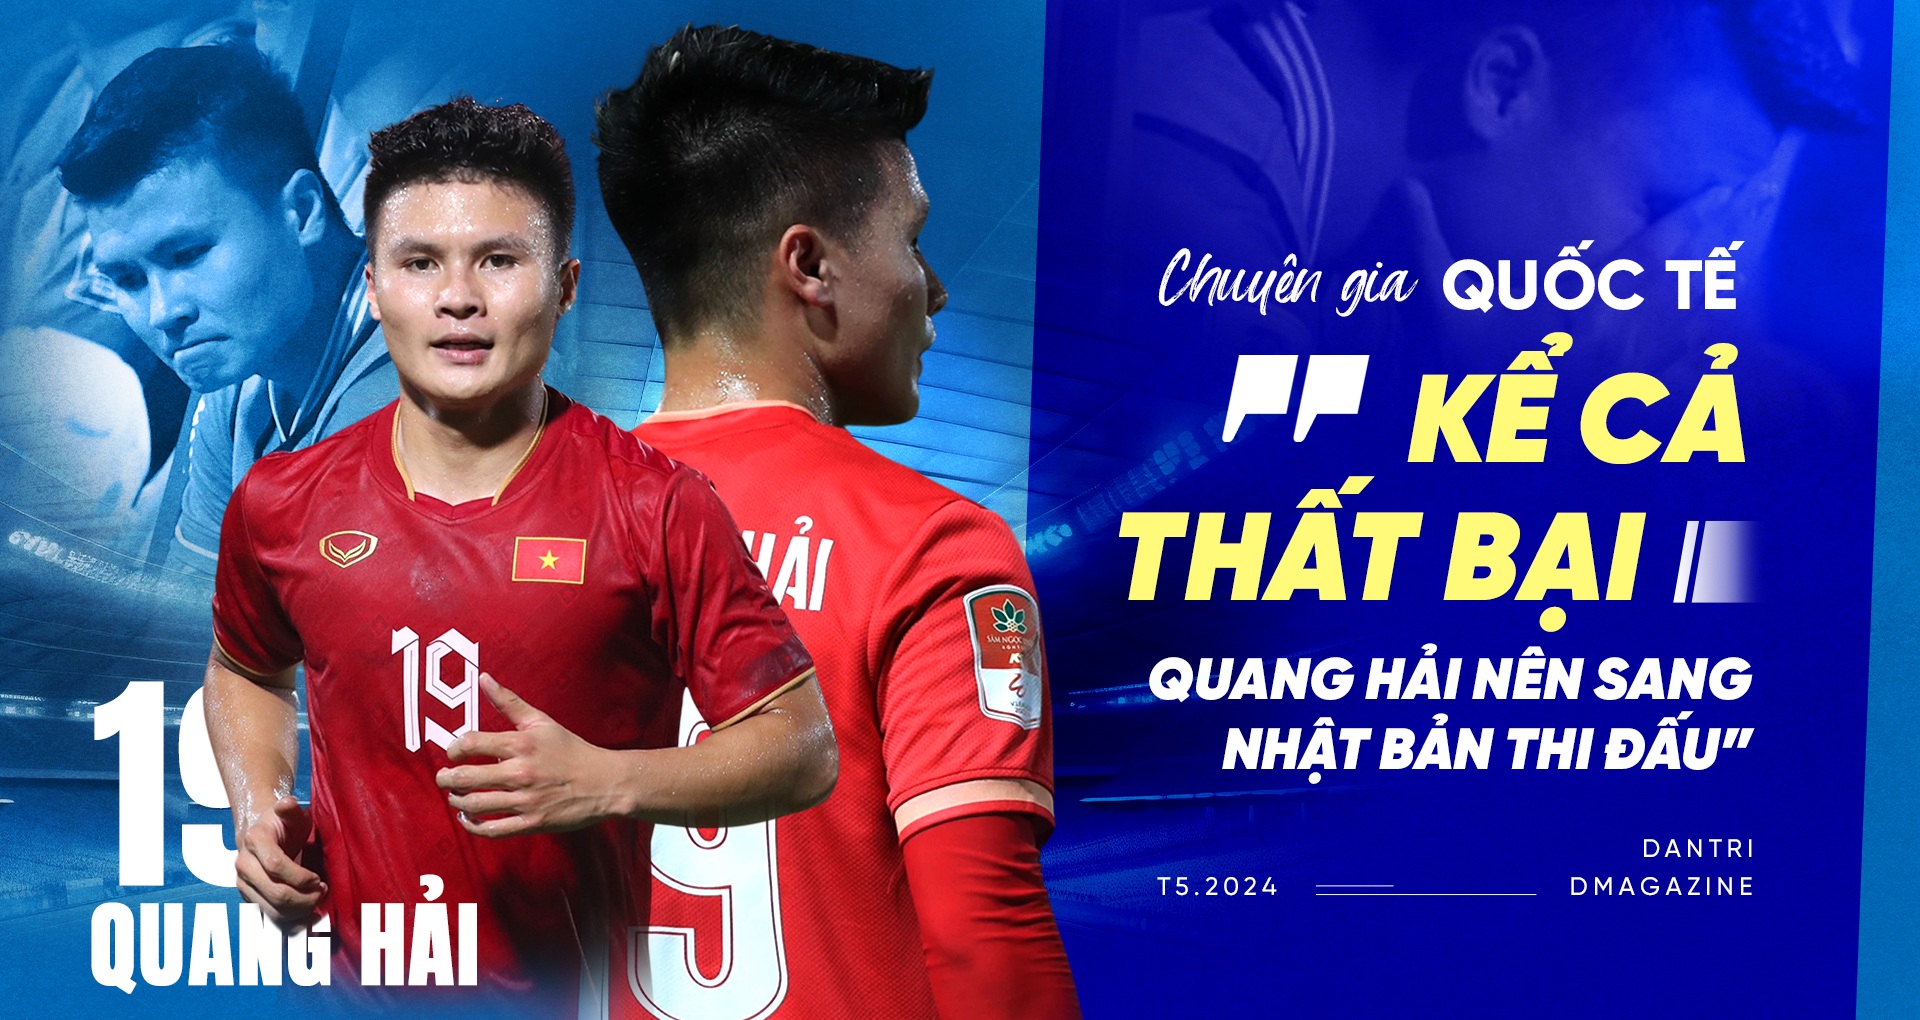 Chuyên gia quốc tế: "Kể cả thất bại, Quang Hải nên sang Nhật Bản thi đấu"